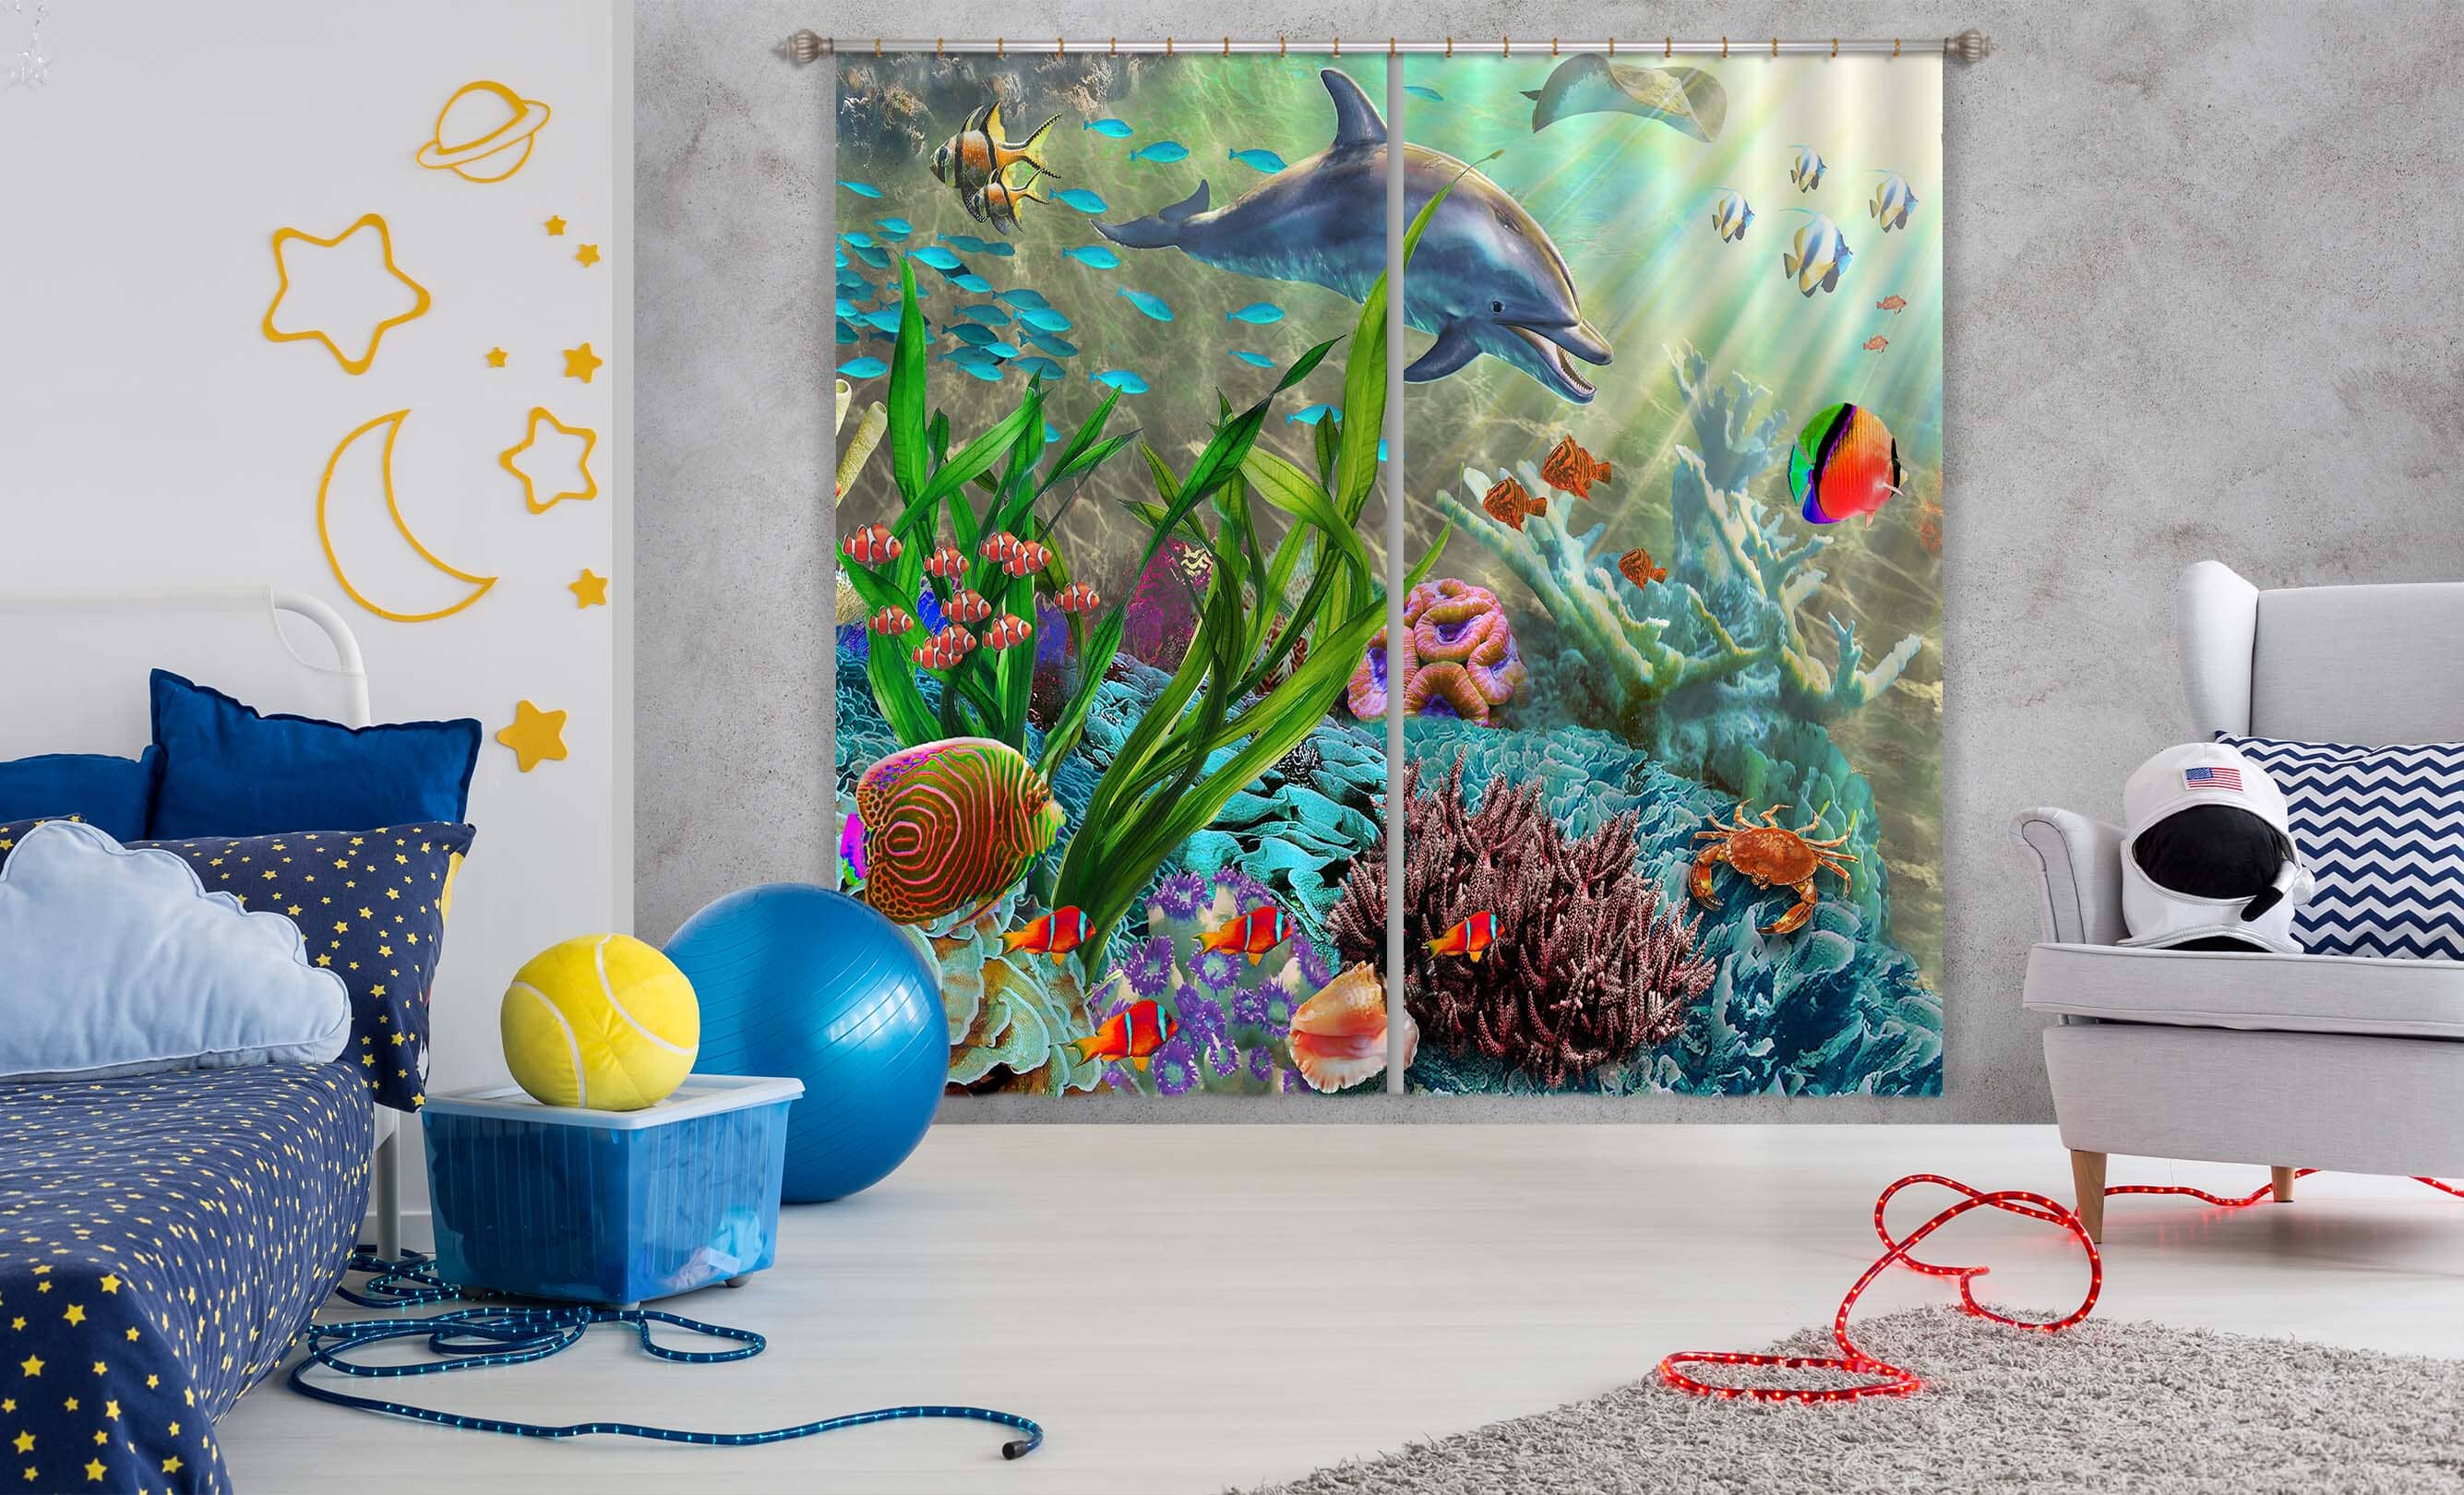 3D Colored Fish 053 Adrian Chesterman Curtain Curtains Drapes Curtains AJ Creativity Home 